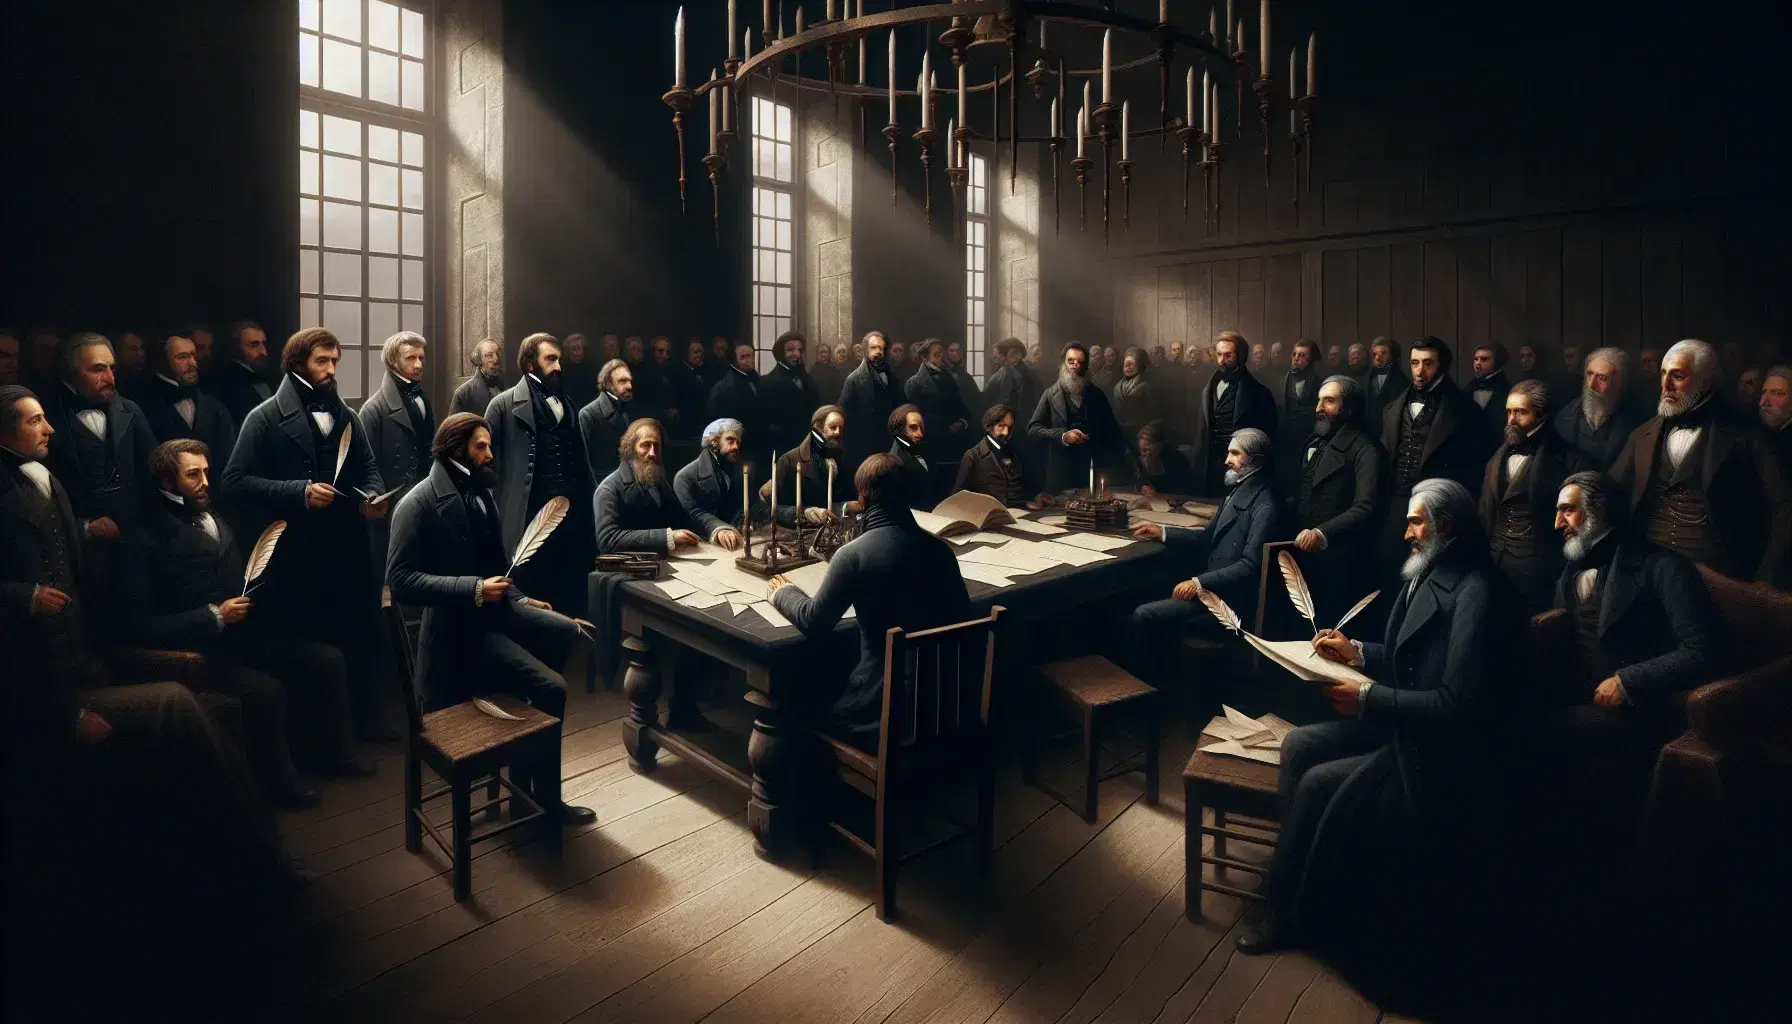 Grupo de hombres en atuendo del siglo XIX discutiendo documentos en una mesa de madera bajo la luz natural de ventanas altas en una sala histórica.